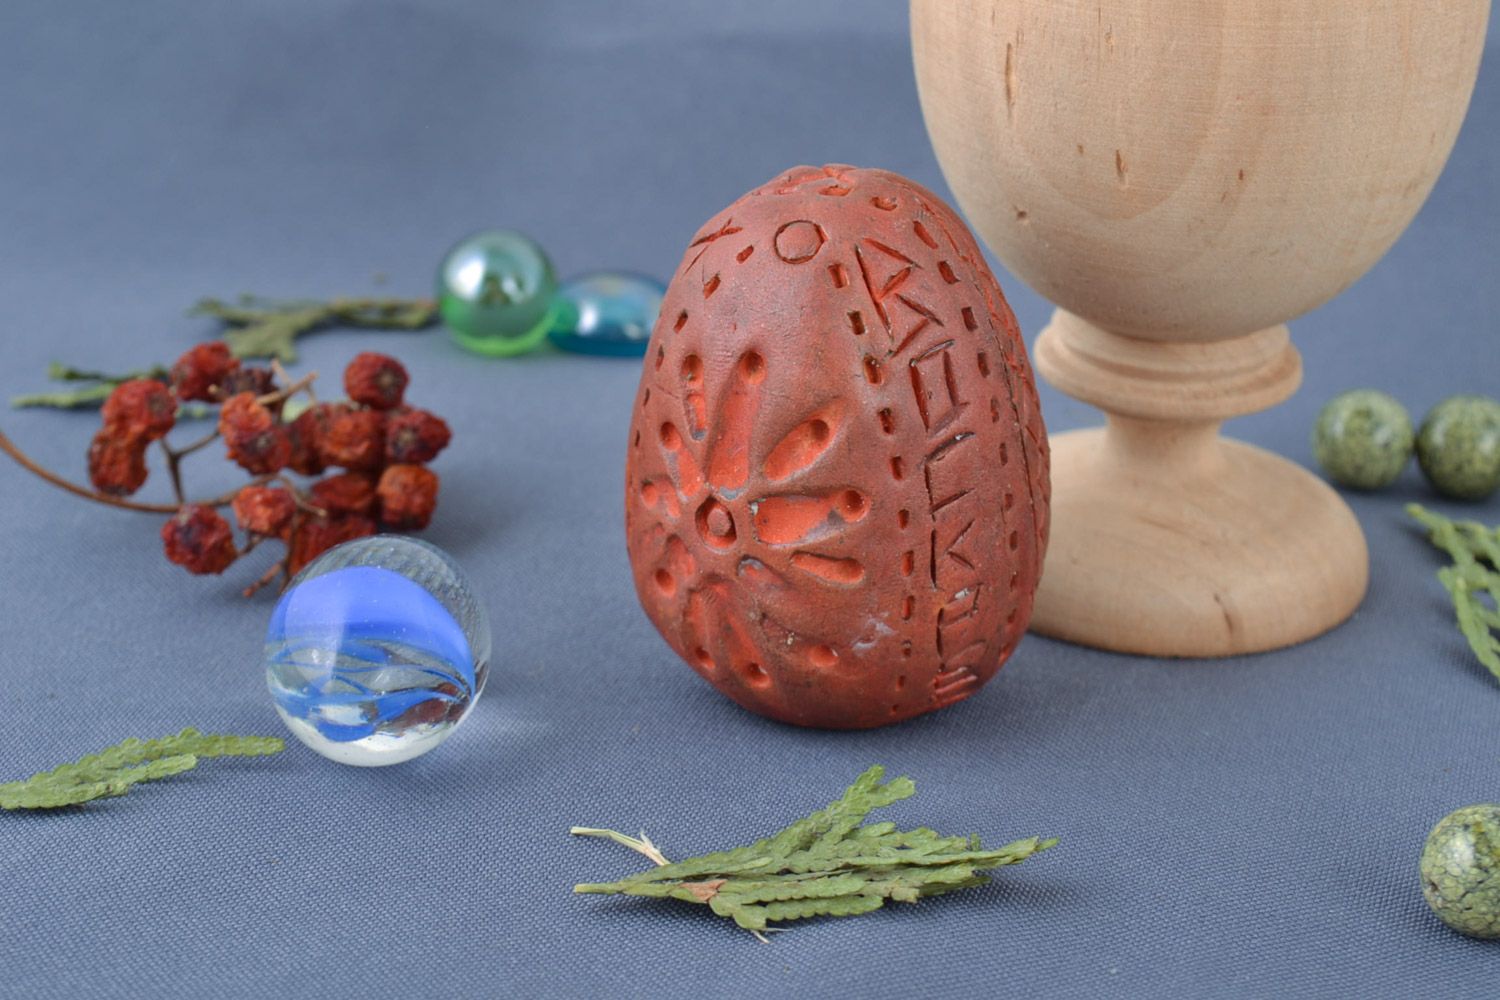 Яйцо из глины красной с узорами лепное небольшое коричневое ручная работа фото 1